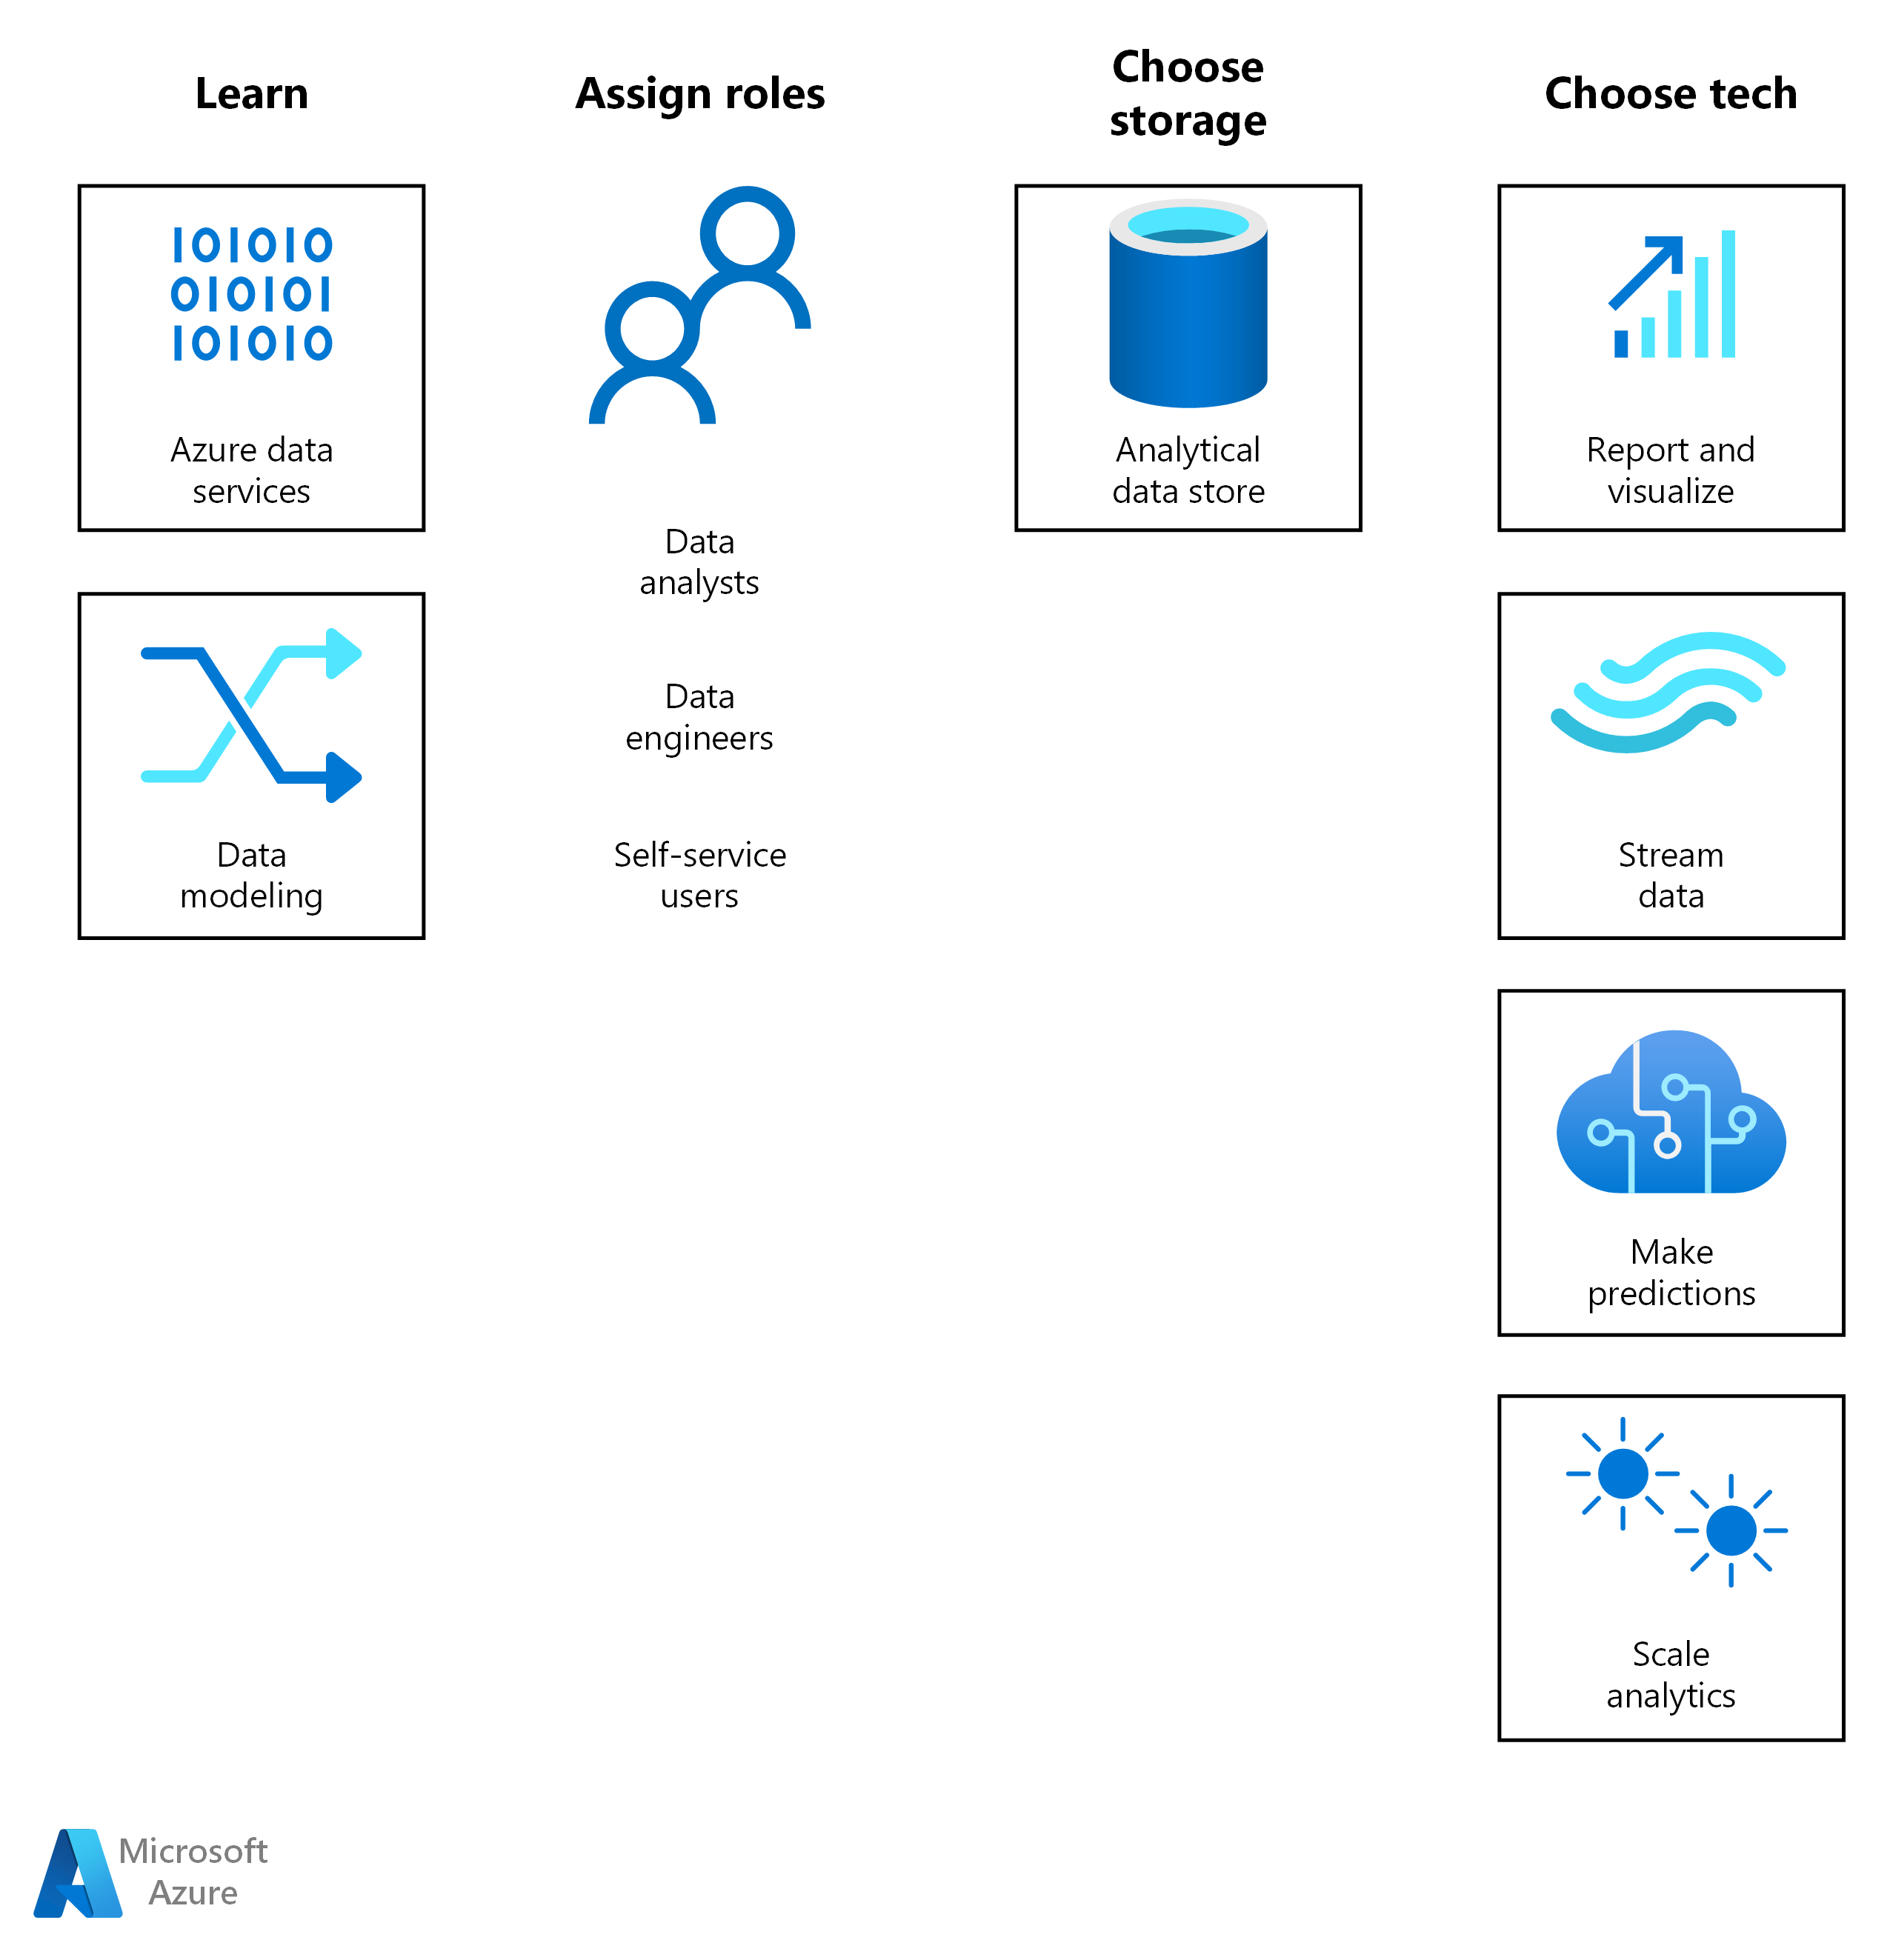 Podróż rozwiązania do analizy na platformie Azure rozpoczyna się od nauki i przypisywania ról. Następnie wybierz rozwiązanie magazynu i technologię azure BI lub sztucznej inteligencji dla obciążenia.